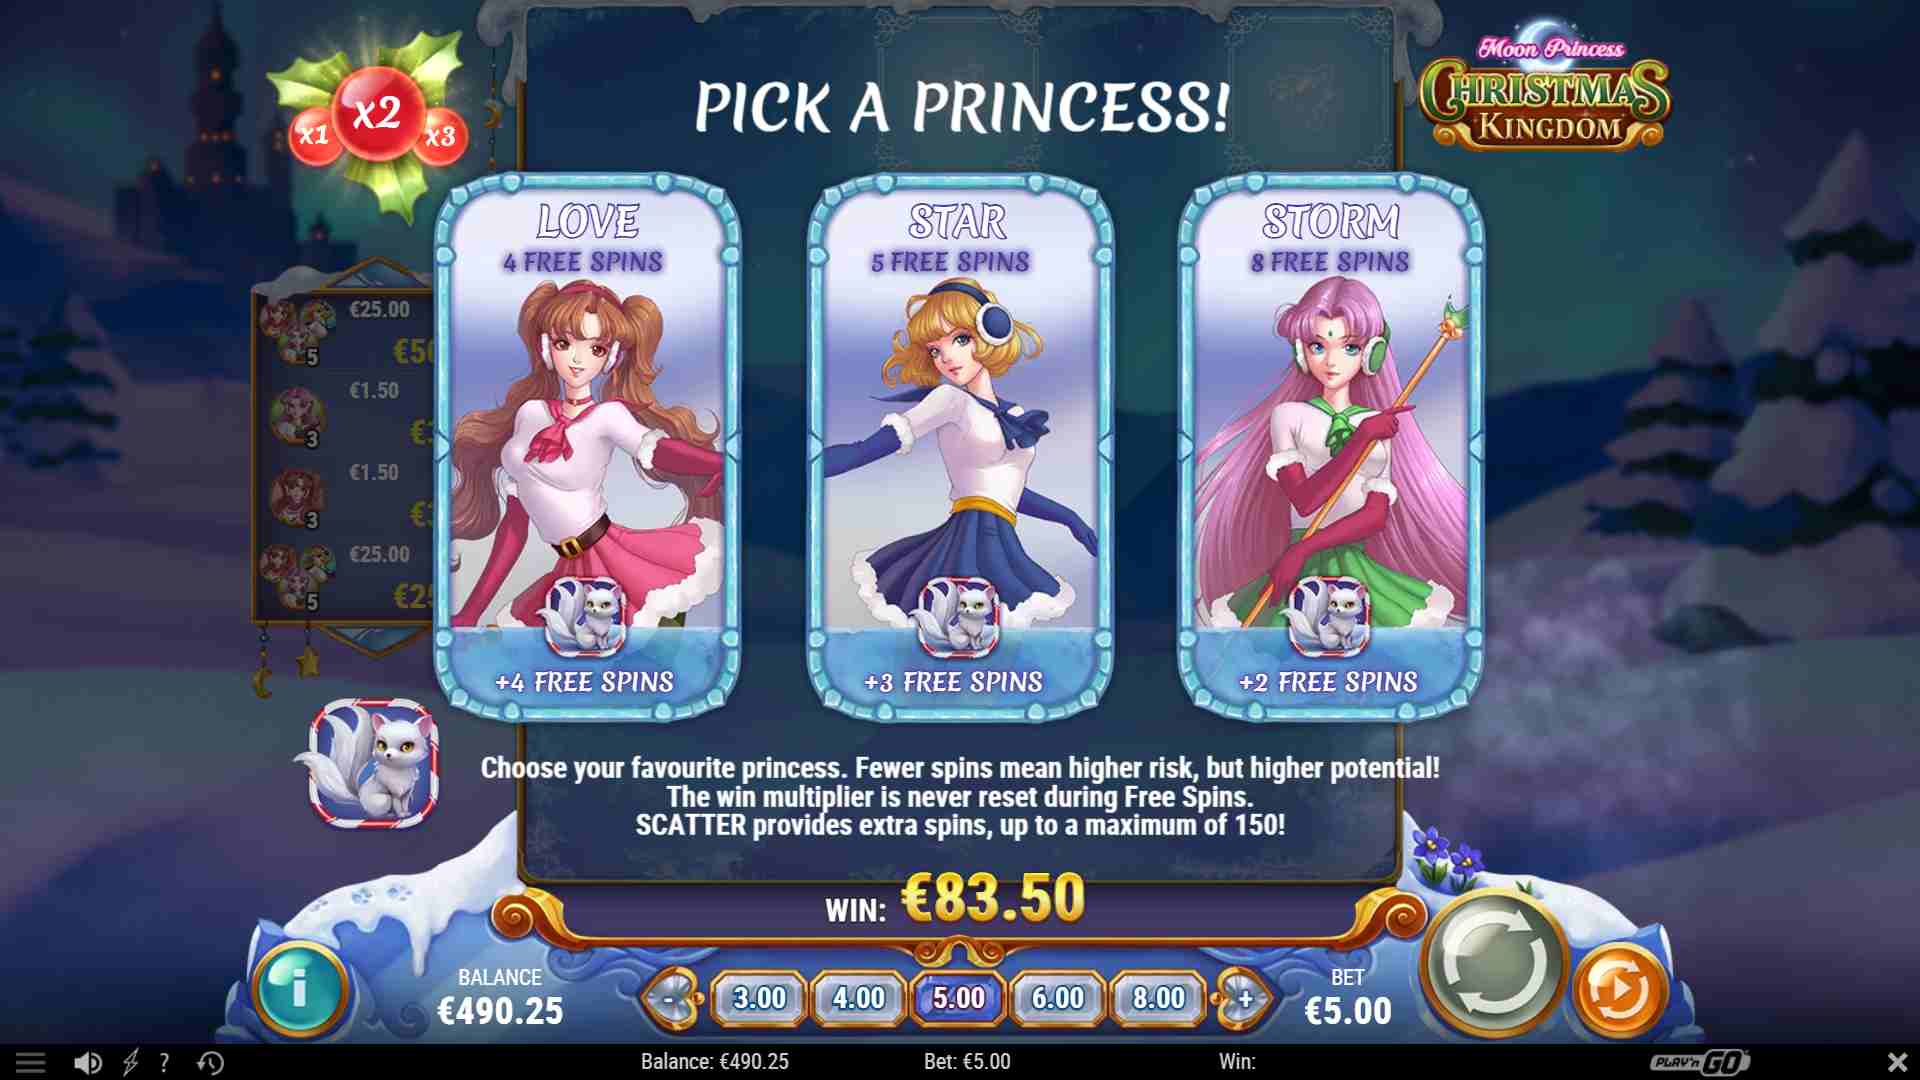 Moon Princess Christmas Kingdom Free Spins